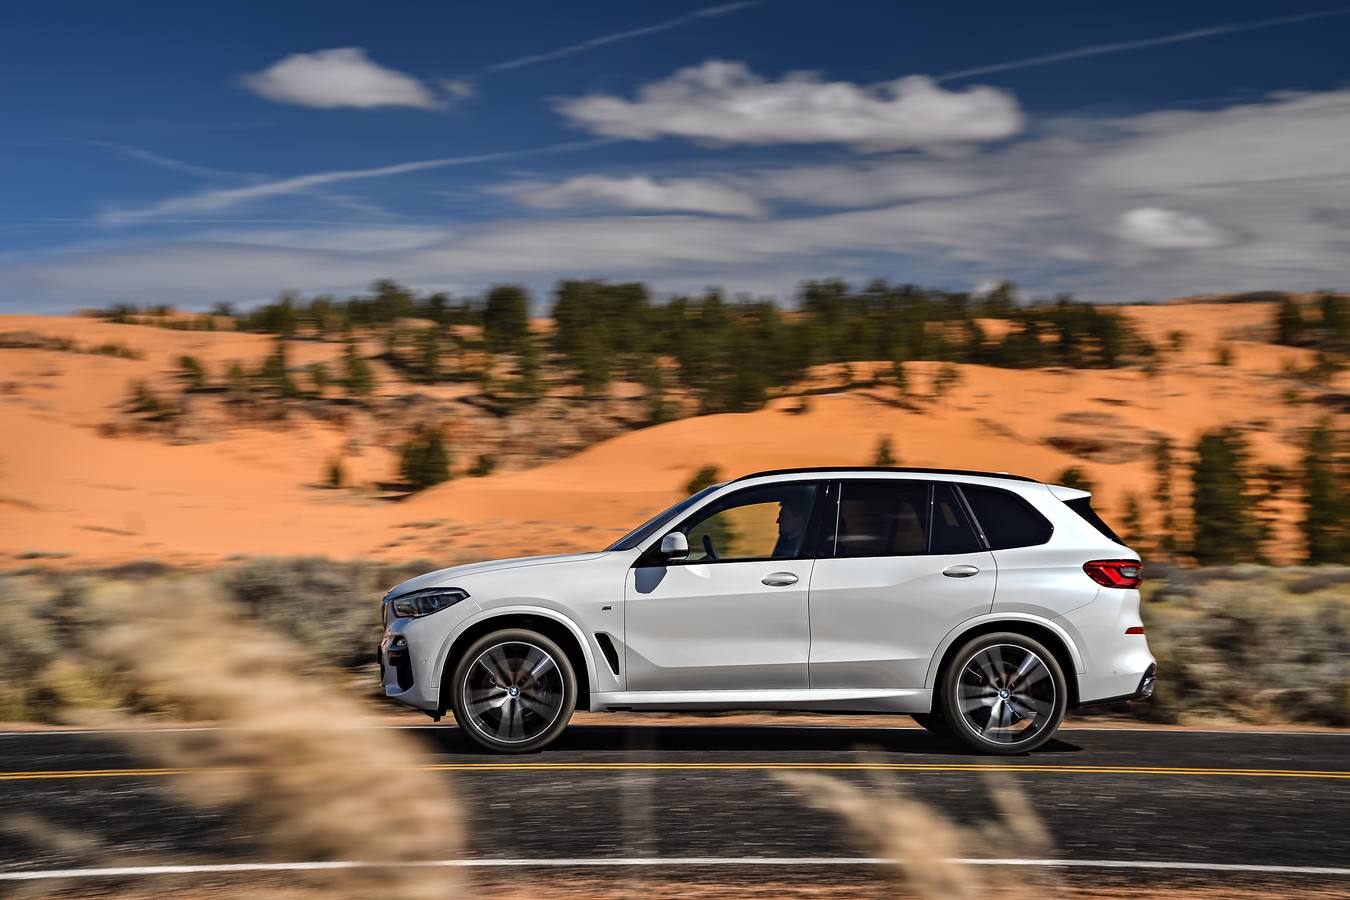 BMW actualiza el X5 con una nueva versión, cuya apariencia es más robusta, con códigos de diseño actualizados y mayor amplitud del habitáculo gracias a unas dimensiones ampliadas. Las nuevas tecnologías representan un paso más en el camino hacia la conducción autónoma.